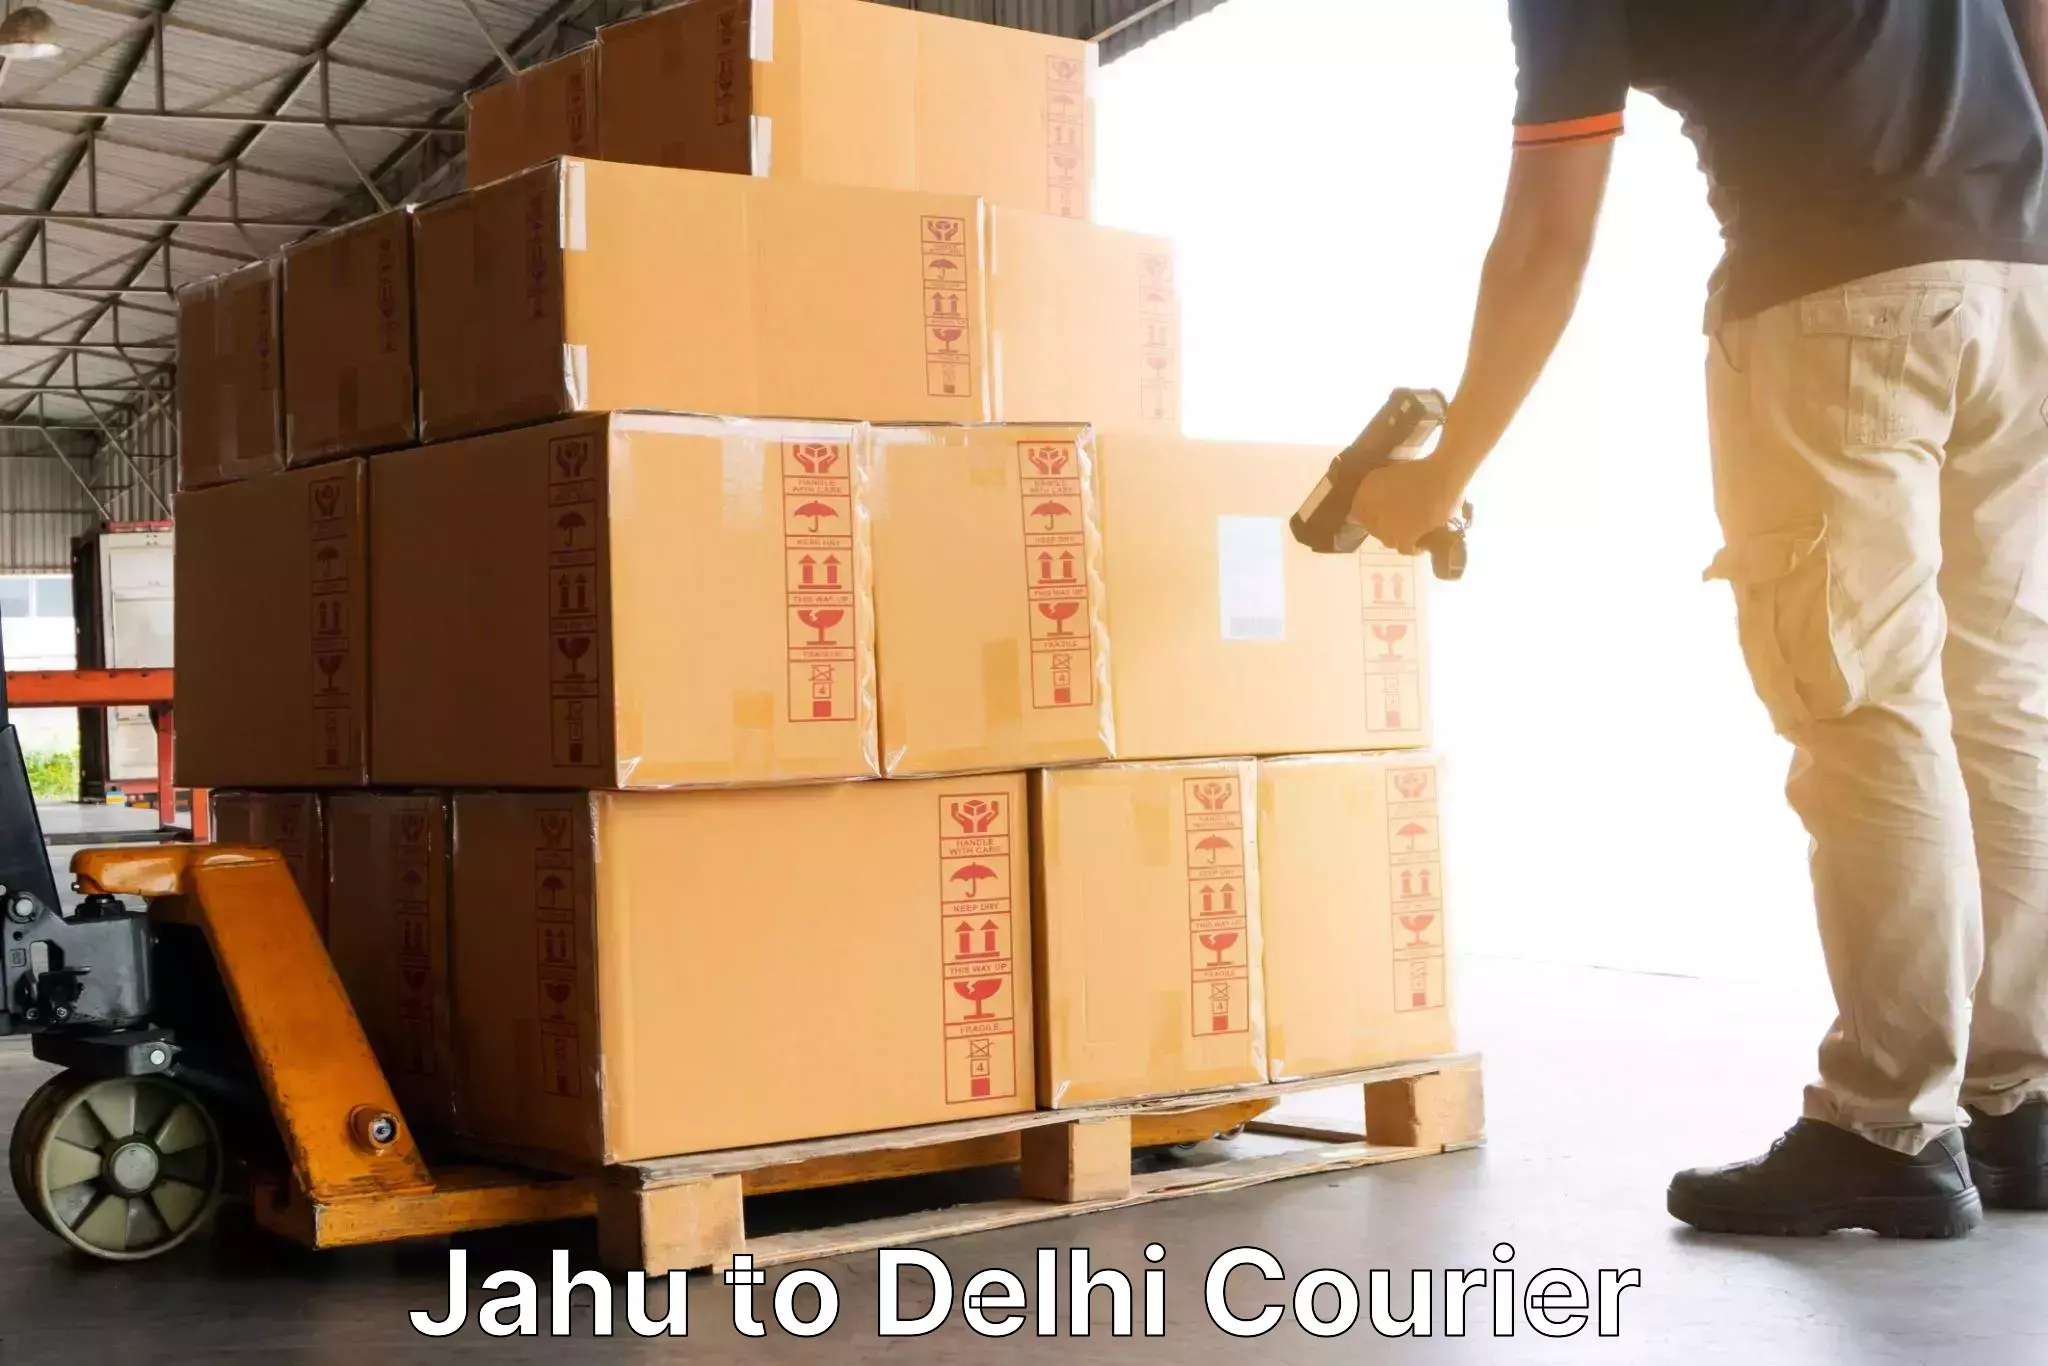 Urgent courier needs Jahu to Subhash Nagar